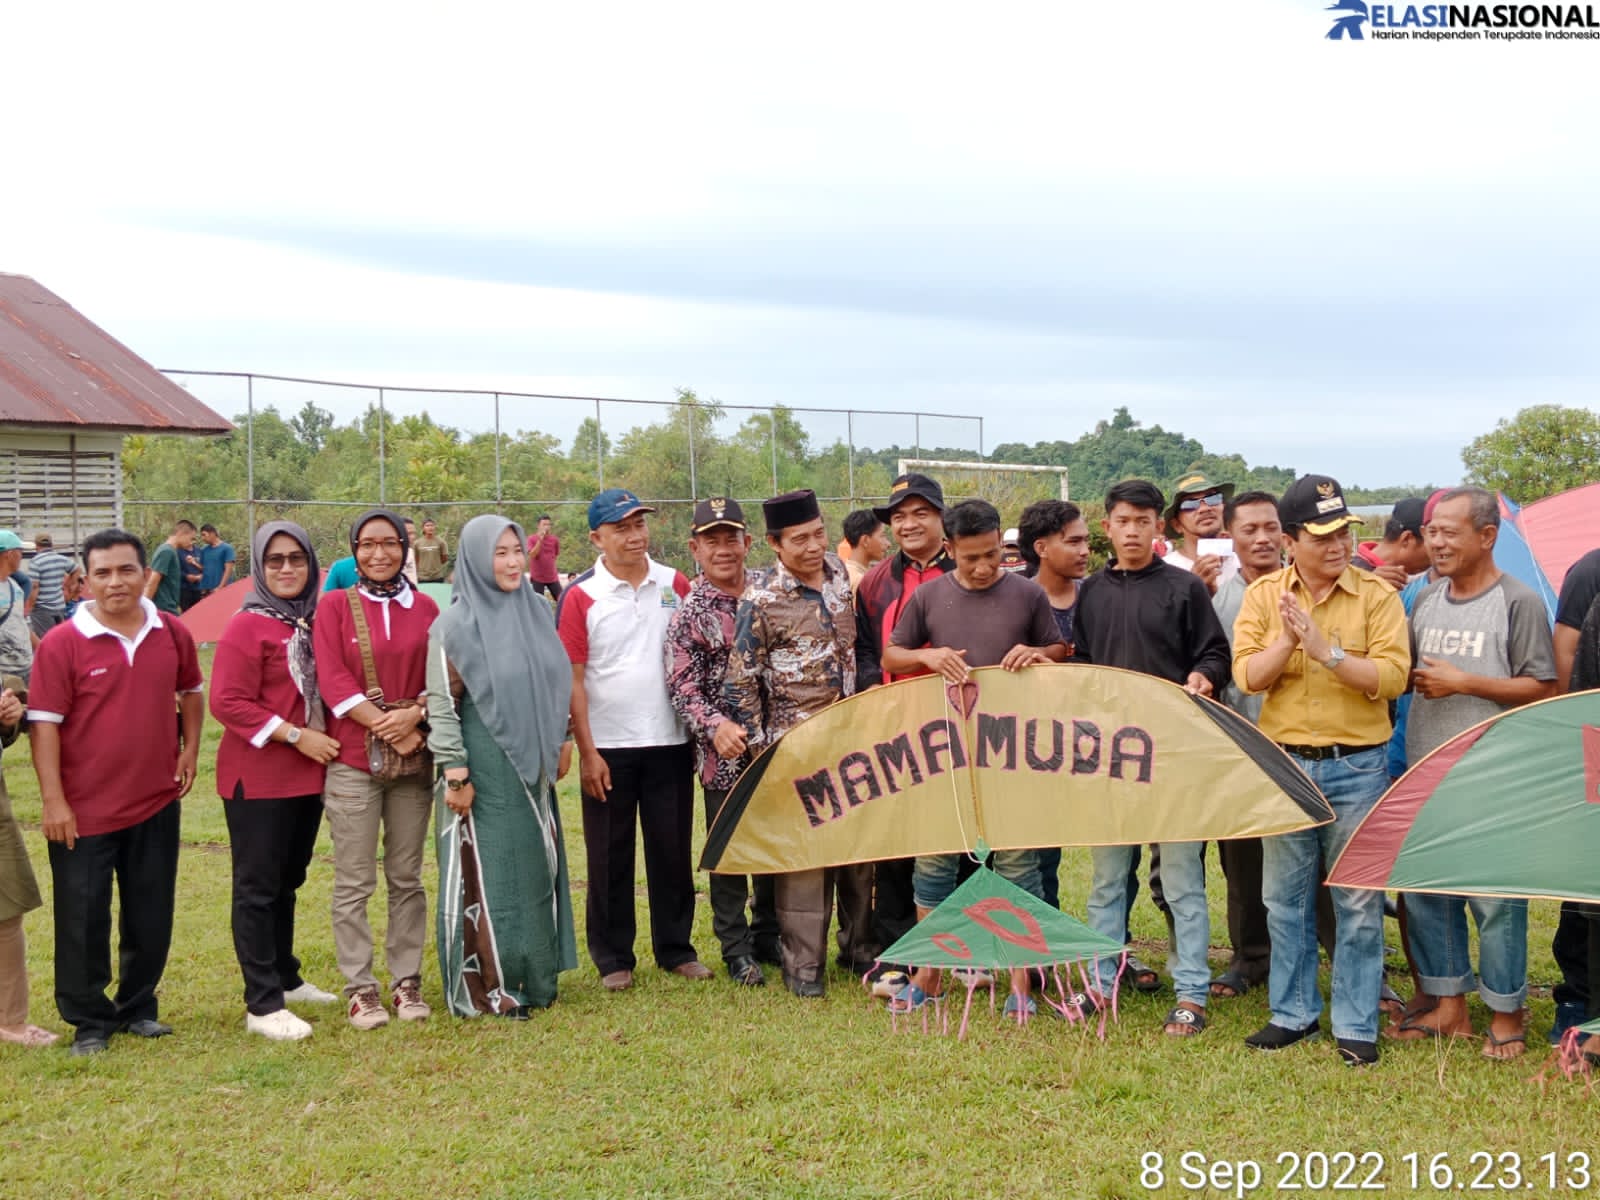 Pejabat Bupati Simeulue Ahmadlyah Buka Secara Resmi Perlombaan Geulayang Tunang Pra PKA VIII 2022 di Simeulue